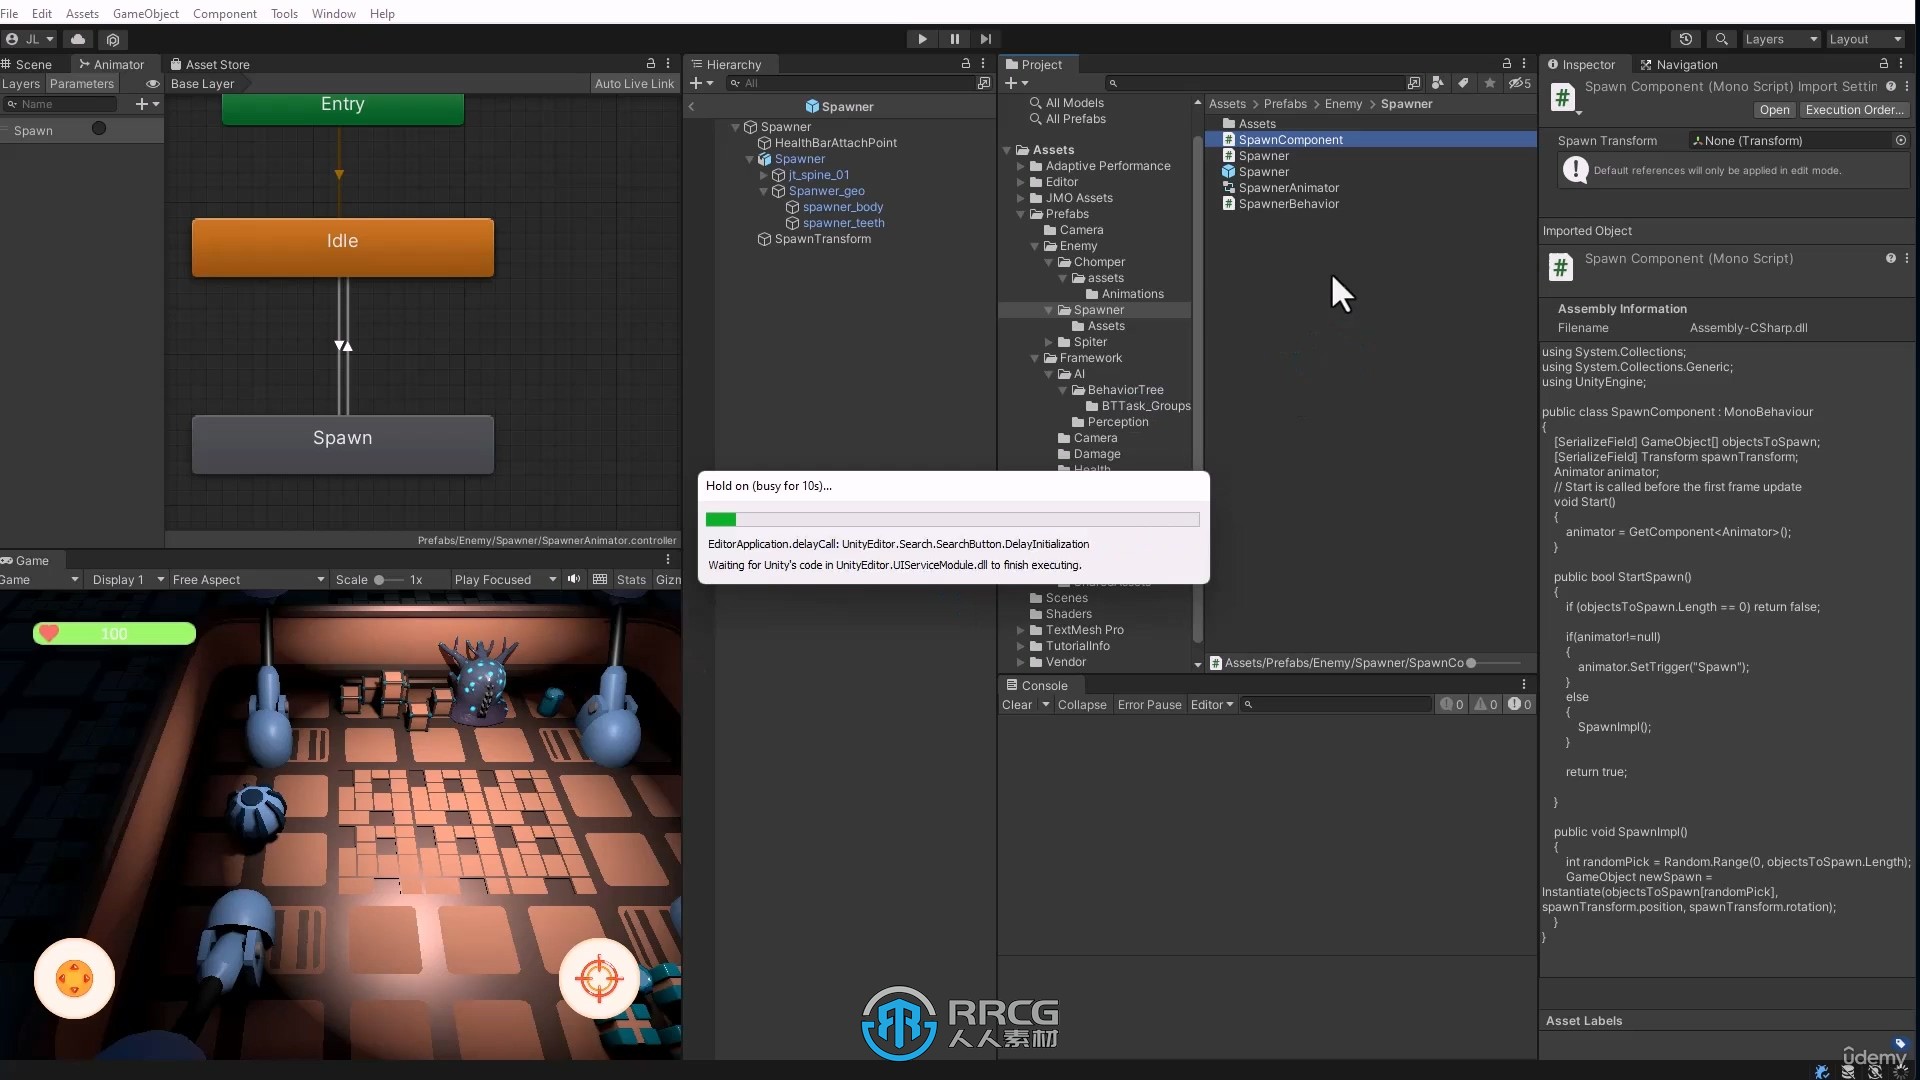 Unity第三人称手机游戏开发技术视频教程